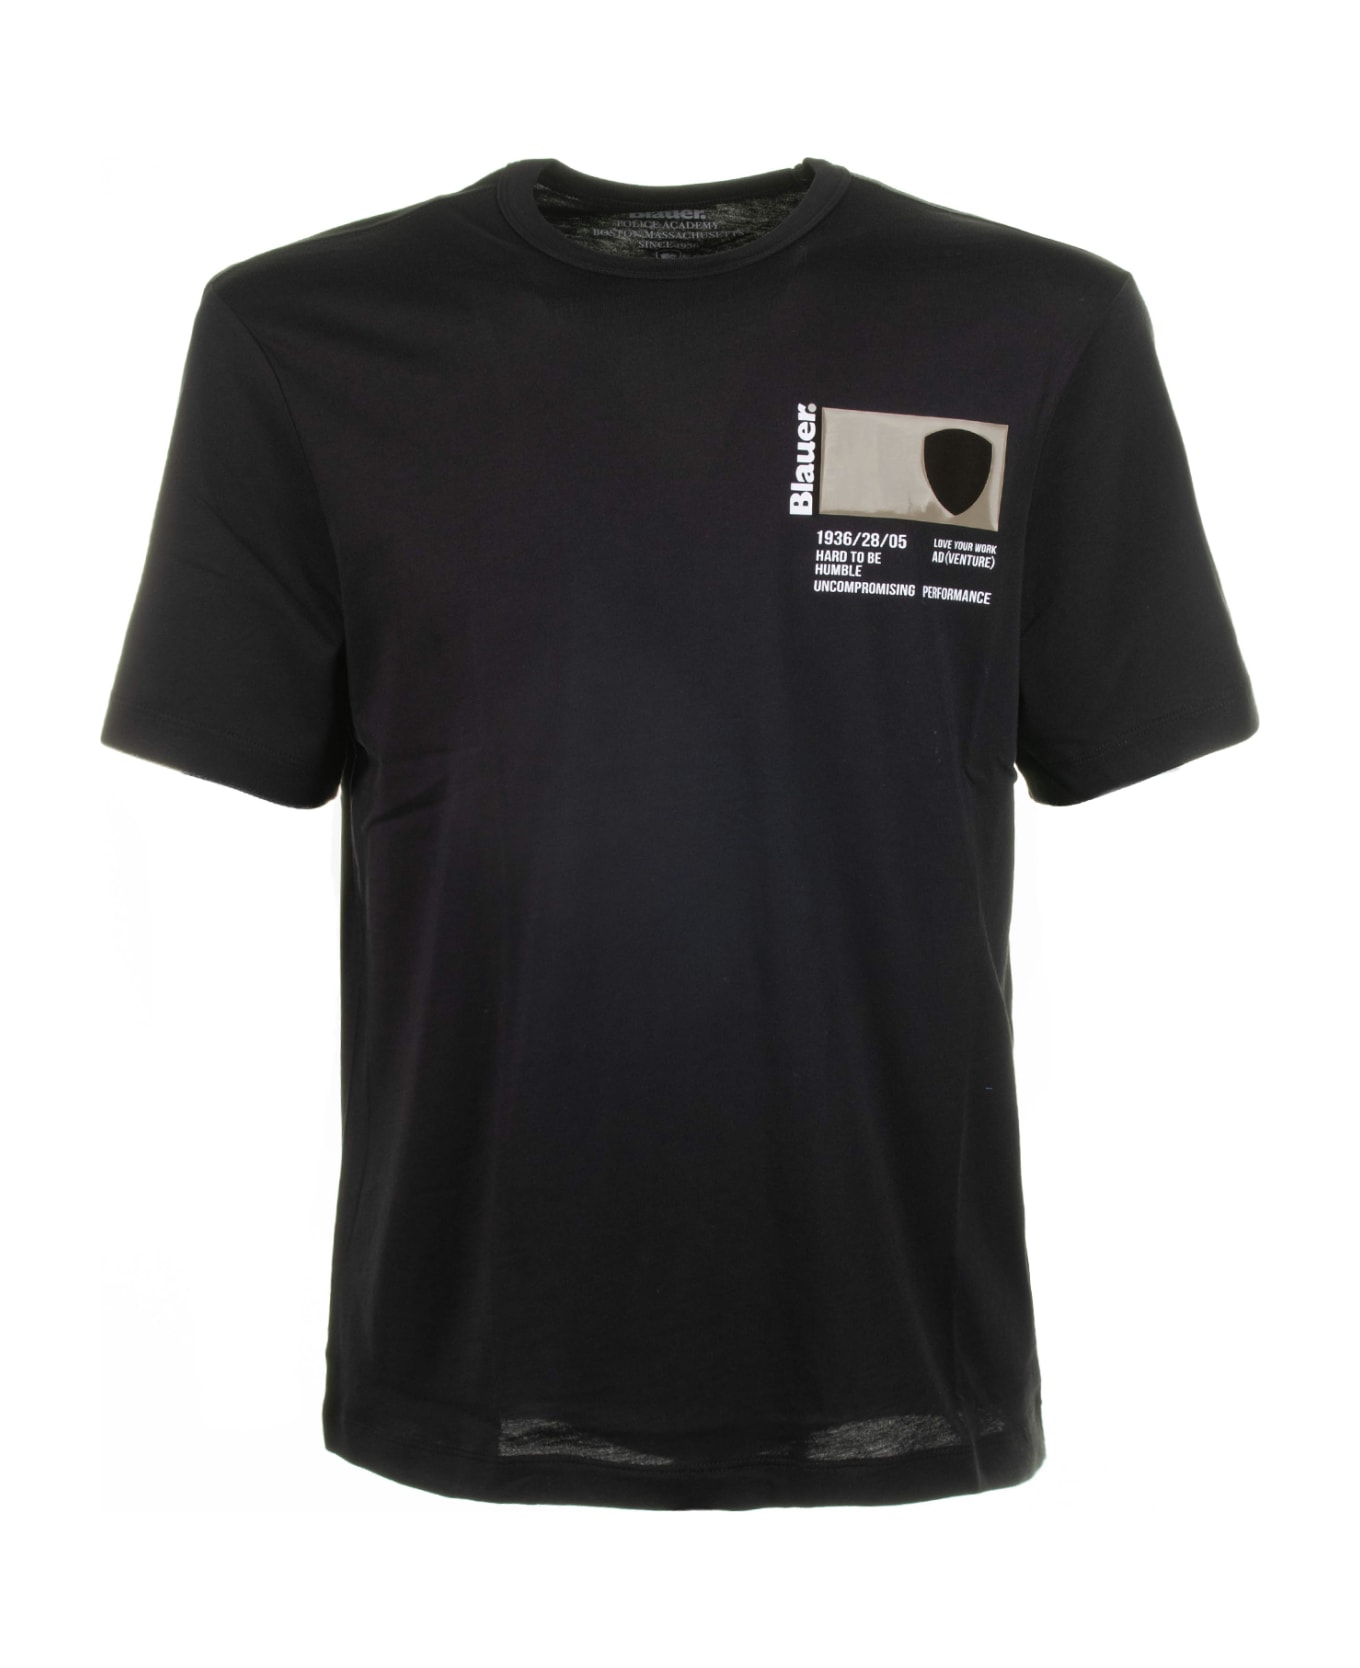 Blauer Black Crew Neck T-shirt In Cotton - NERO シャツ